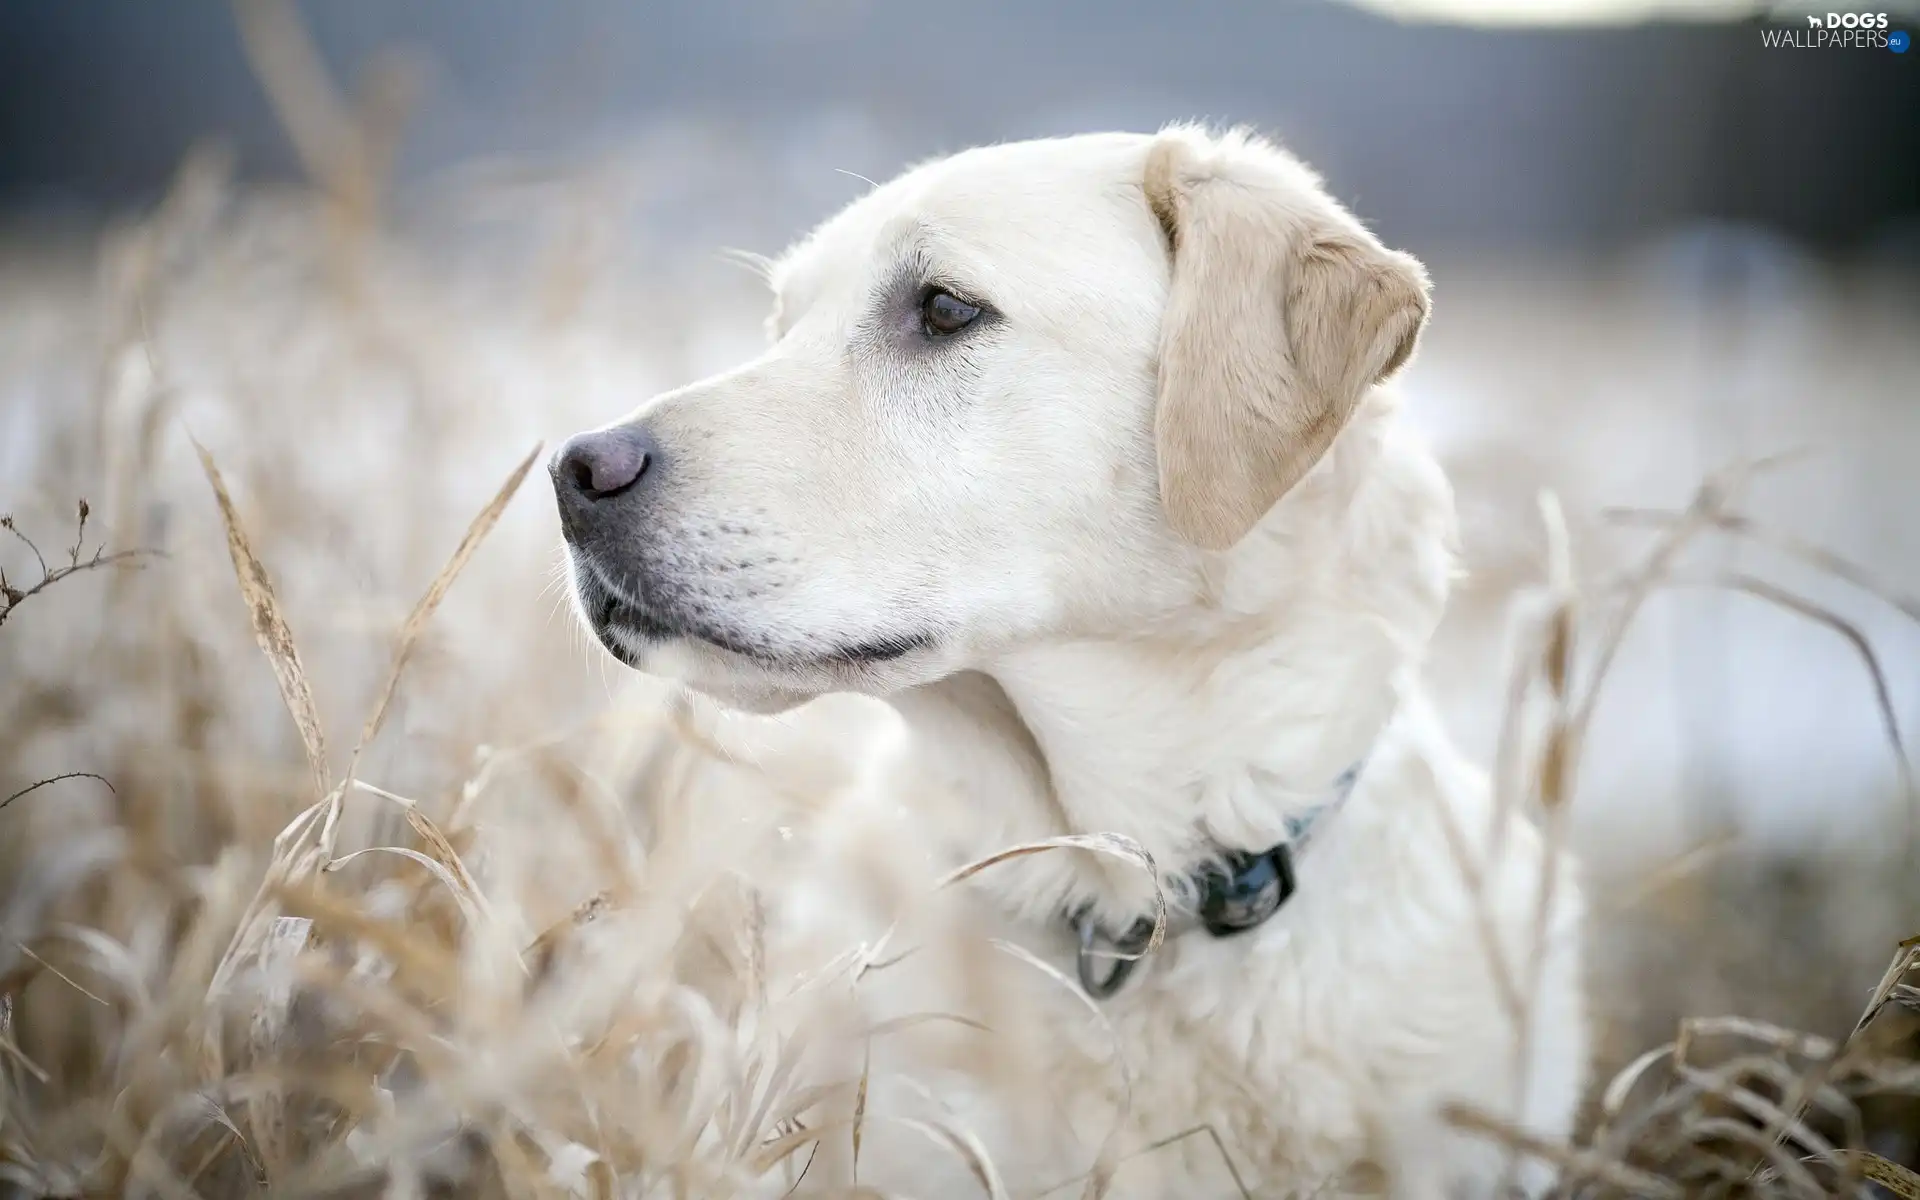 Labrador, retriever, dog